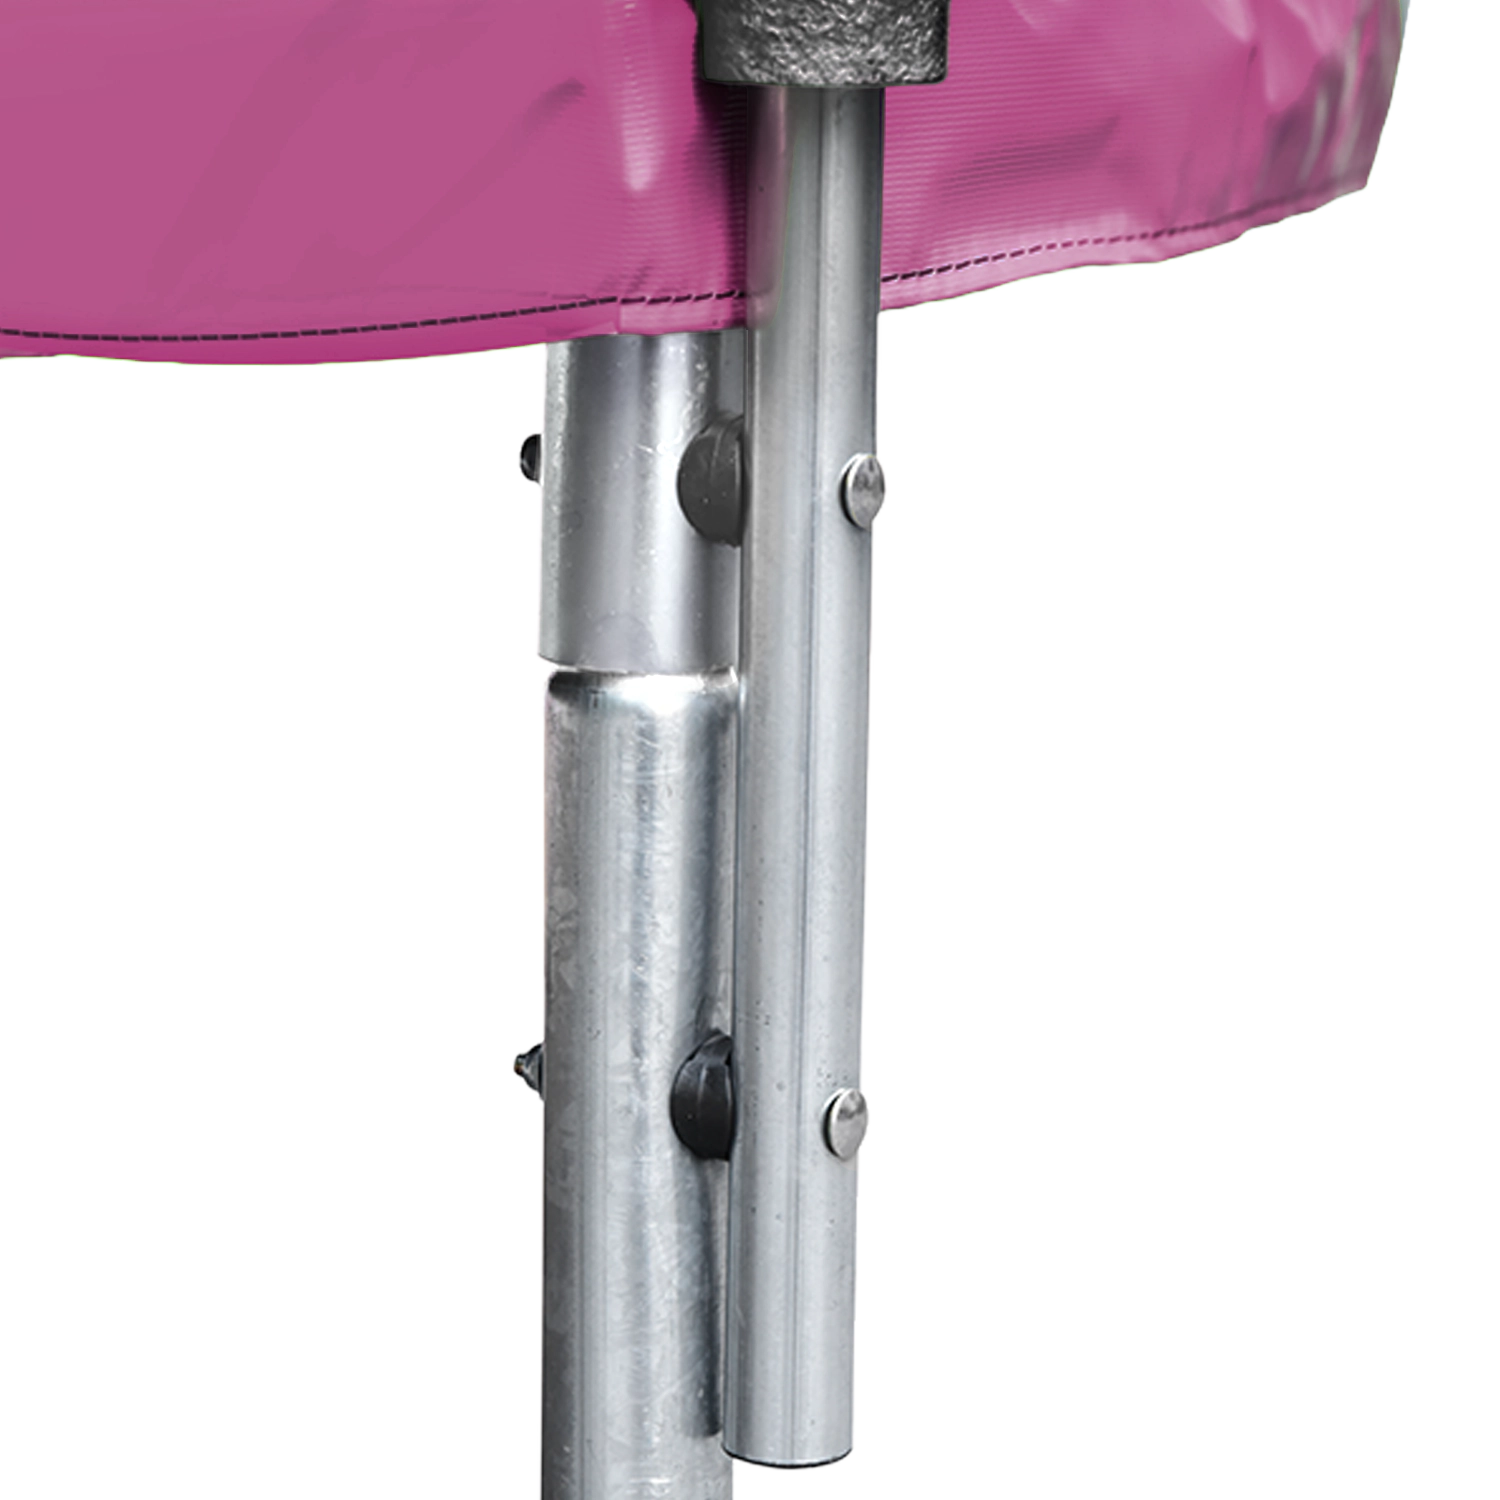 Premium Pack Trampolin 305cm umkehrbar rosa / grau ADELAÏDE + Netz, Leiter, Plane und Verankerungsset